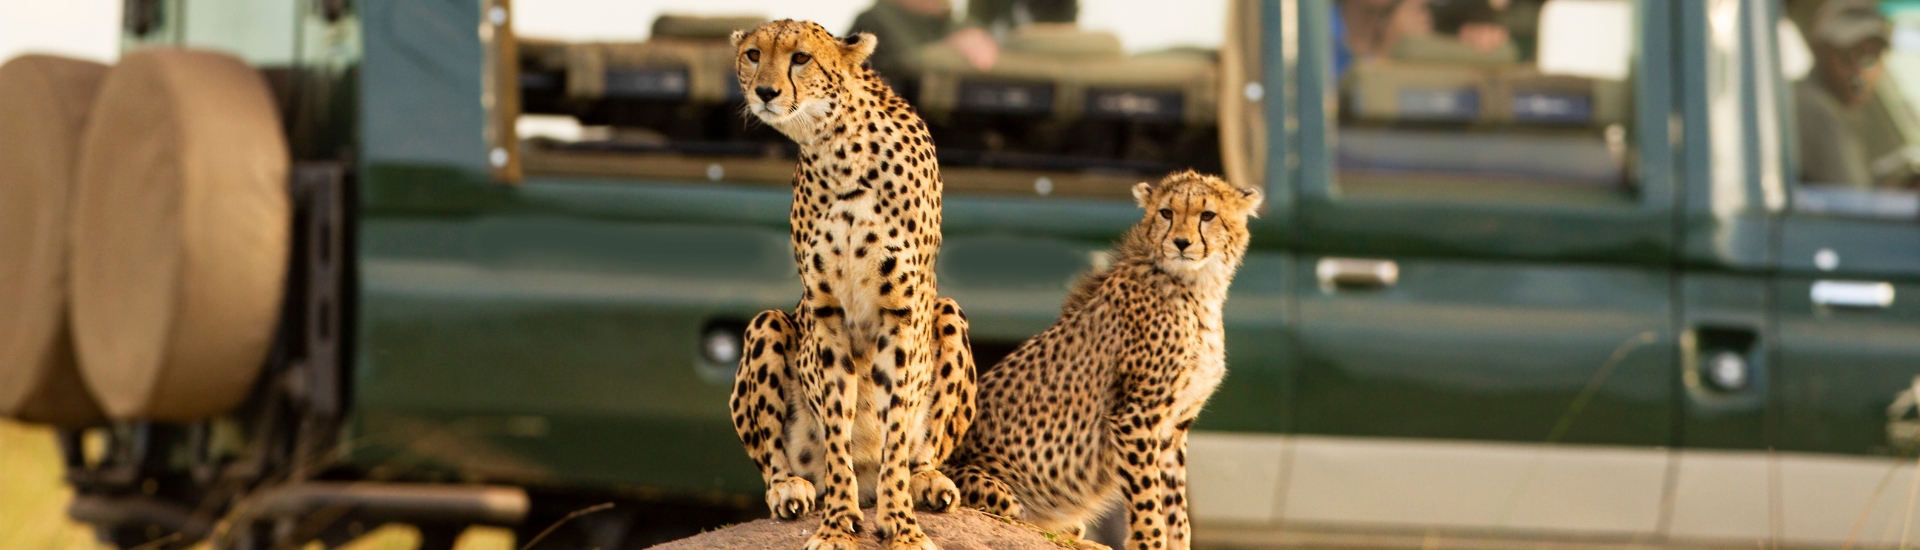 Two cheetahs and safari jeep at Mara Conservancy in Kenya